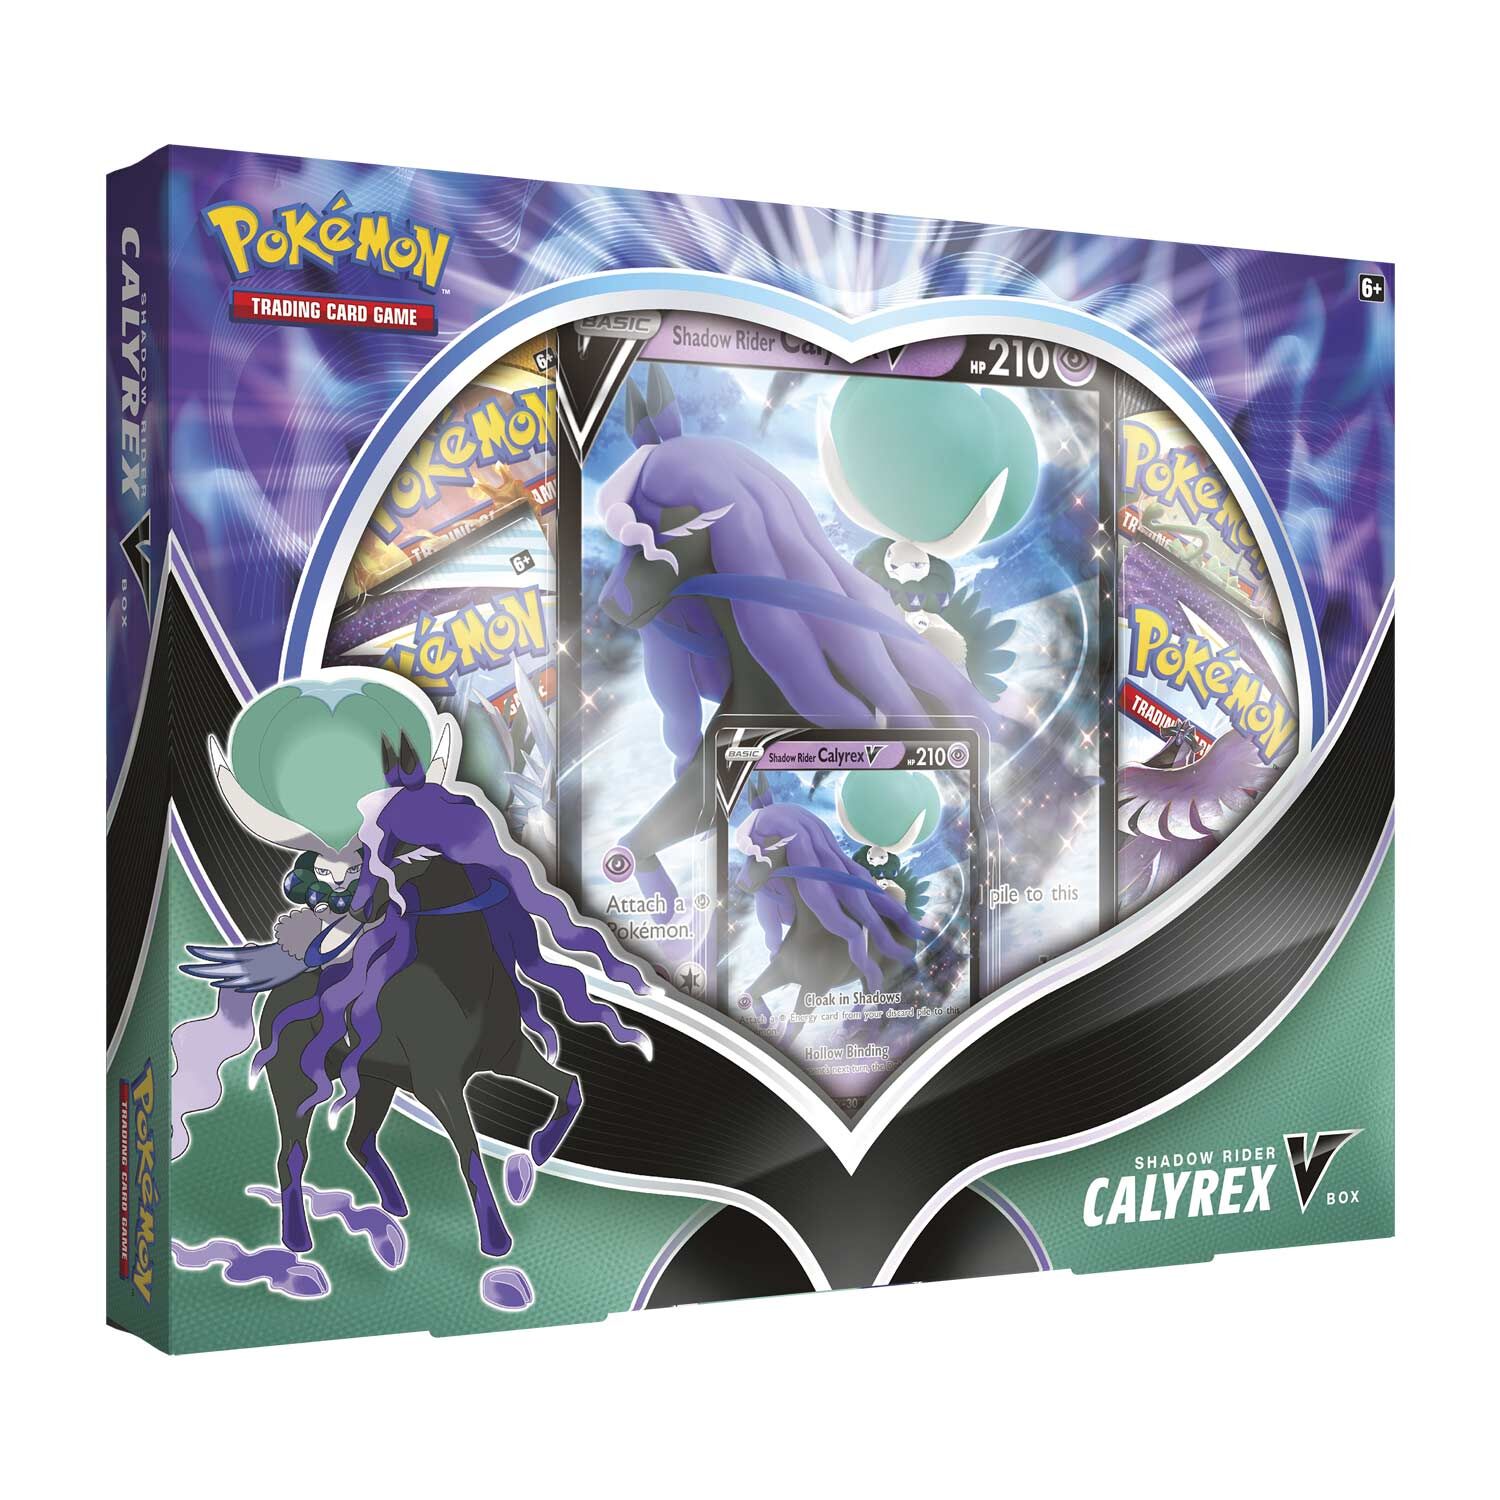 Pokémon Shadow Rider Calyrex V Collection Box - EN